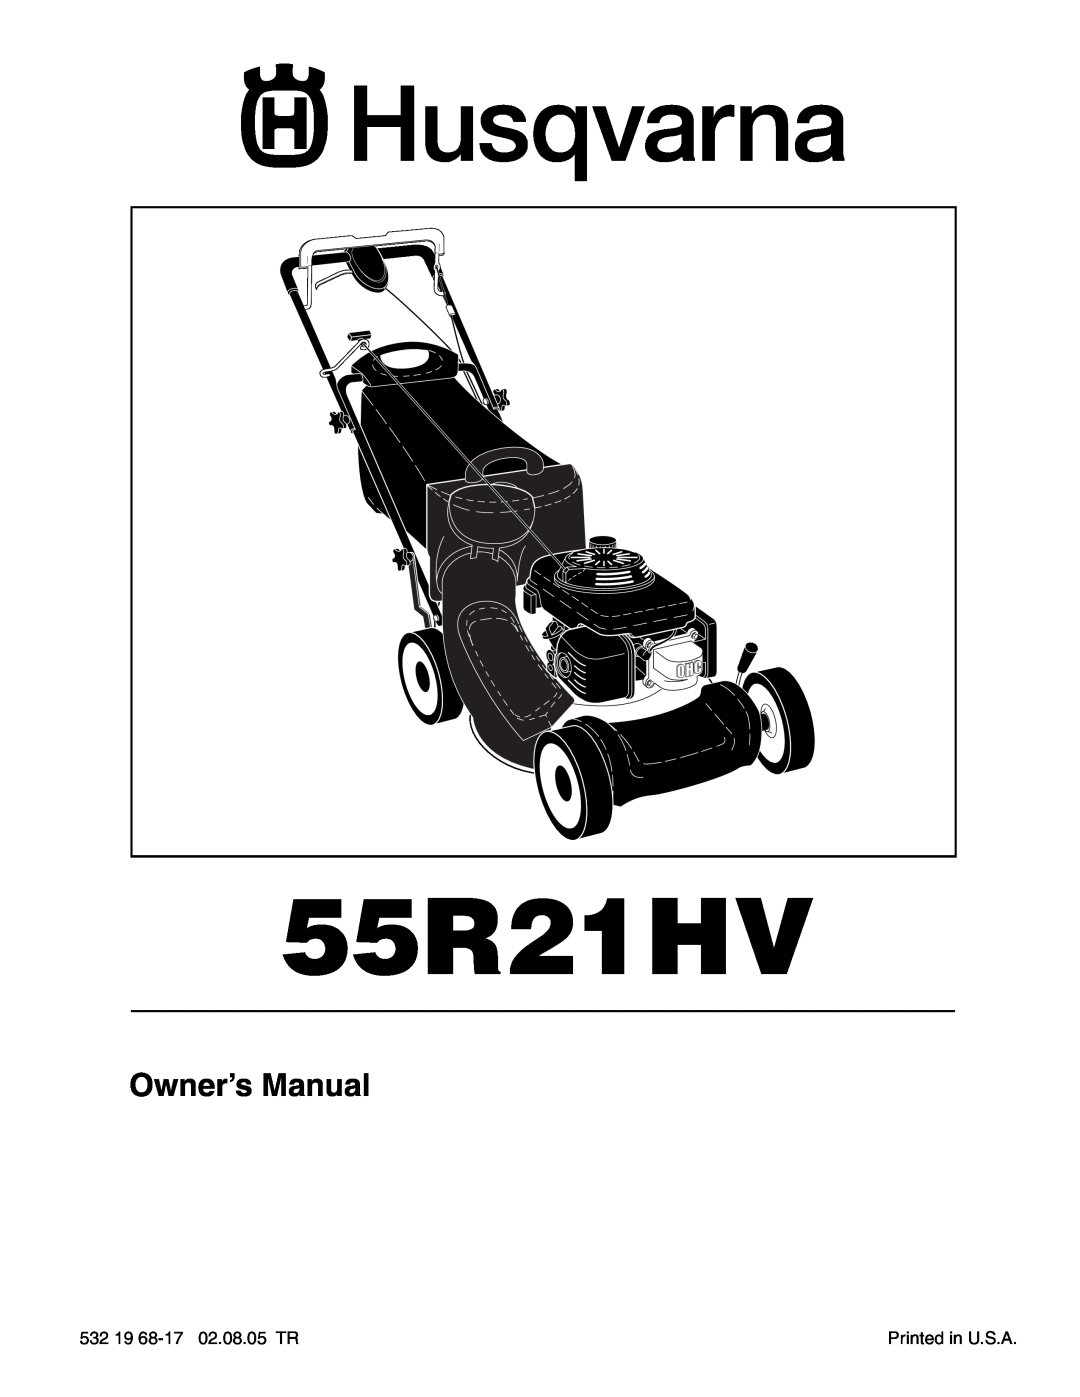 Husqvarna 55R21HV owner manual 